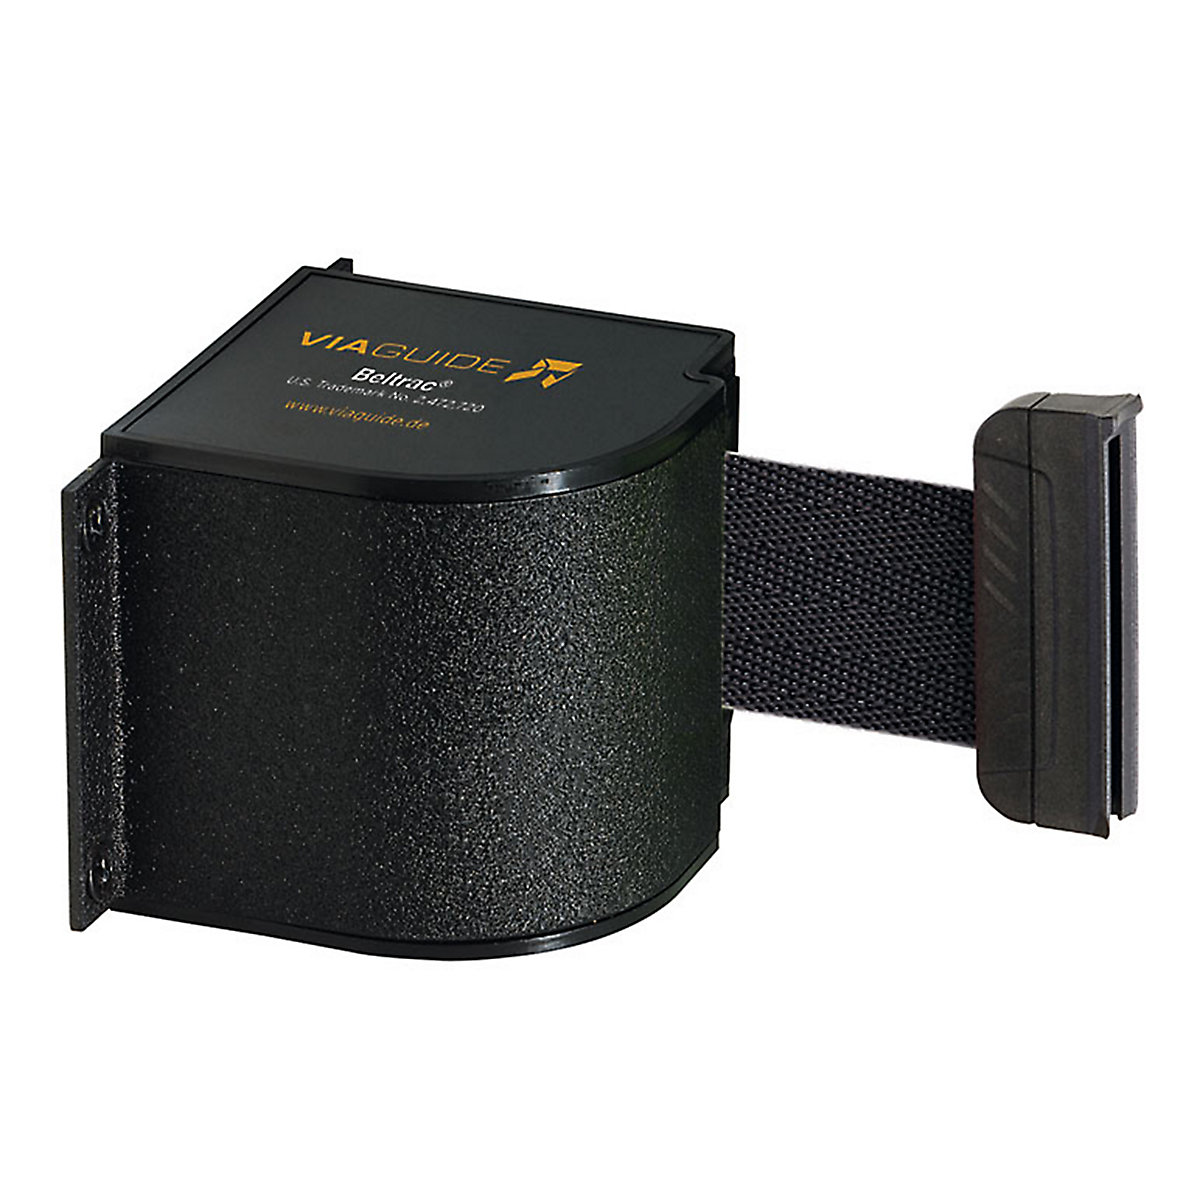 Cassete de cinta Wall Mount, extração máx. da cinta 5400 mm, cor da cinta preto-8